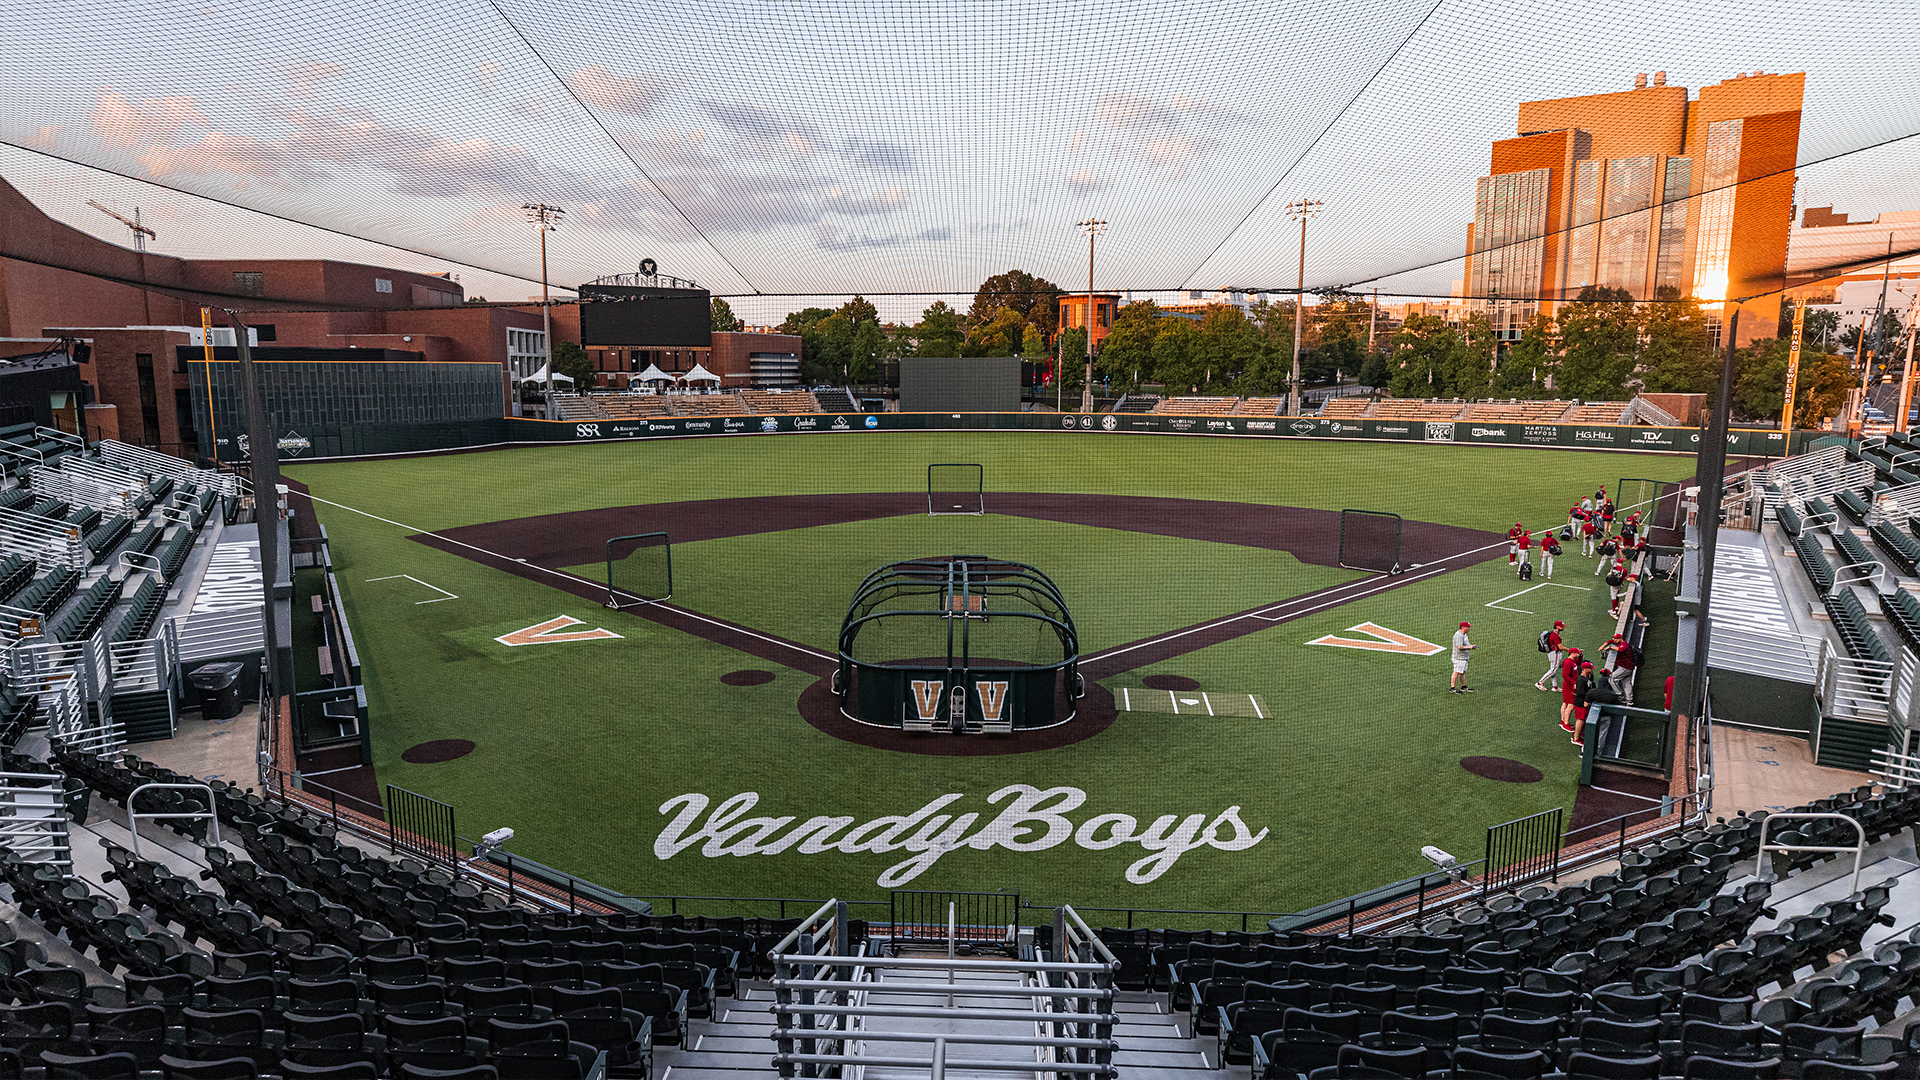 Photos: Vanderbilt vs. Arkansas baseball